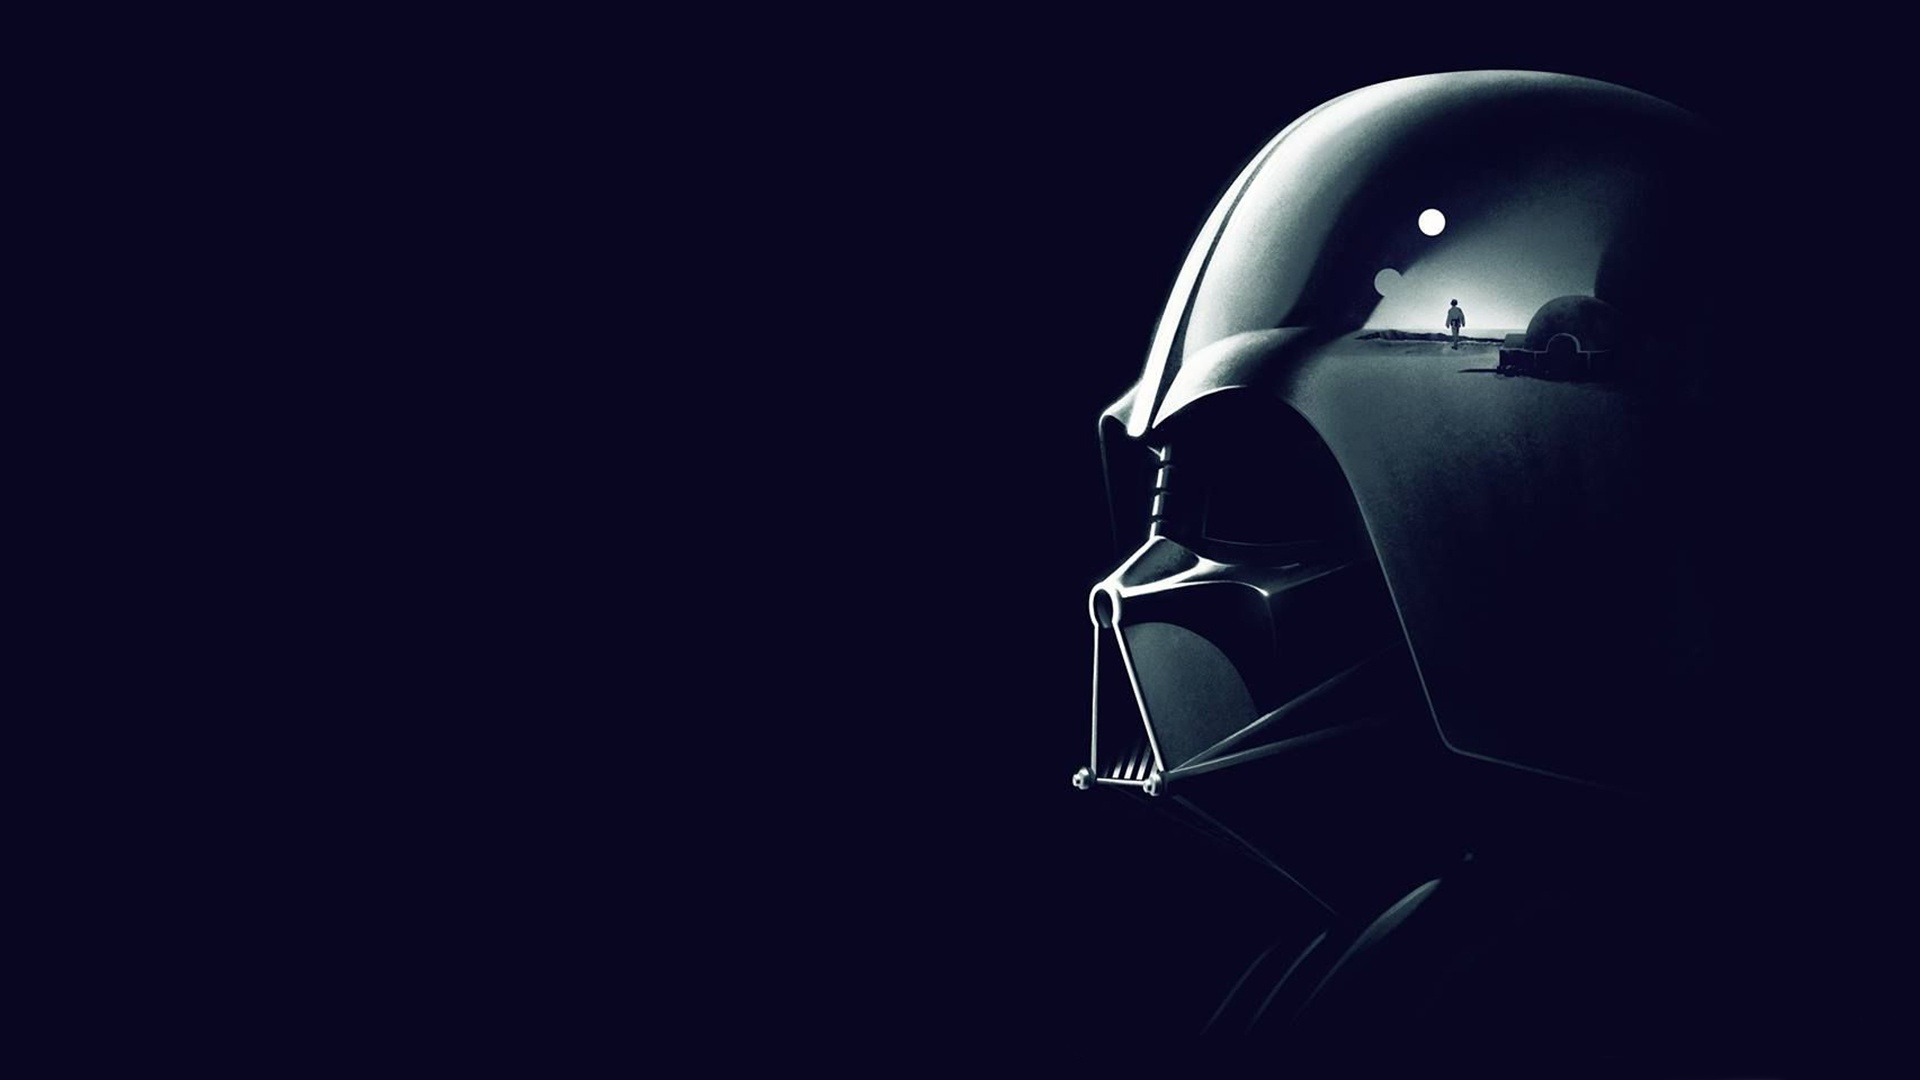 General 1920x1080 Star Wars Darth Vader movies Anakin Skywalker Star Wars Villains mask Sith